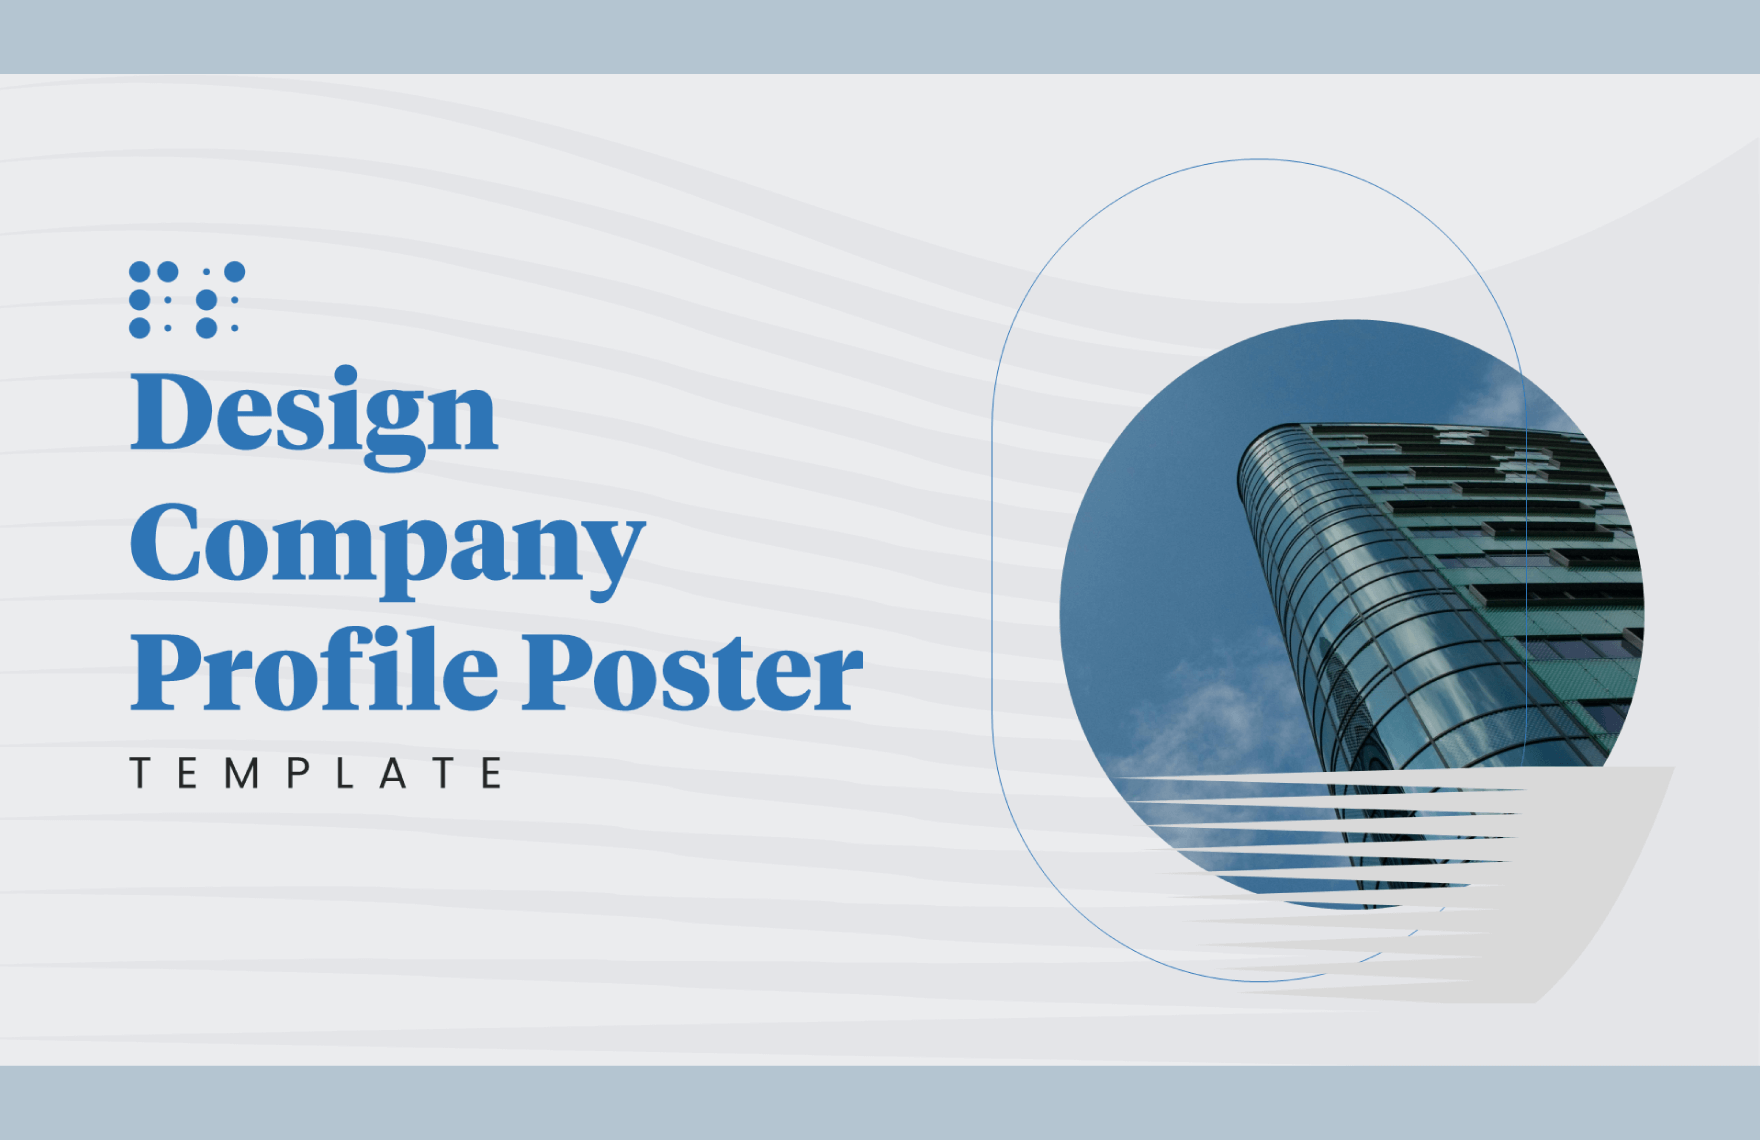 Design Company Profile Poster Template